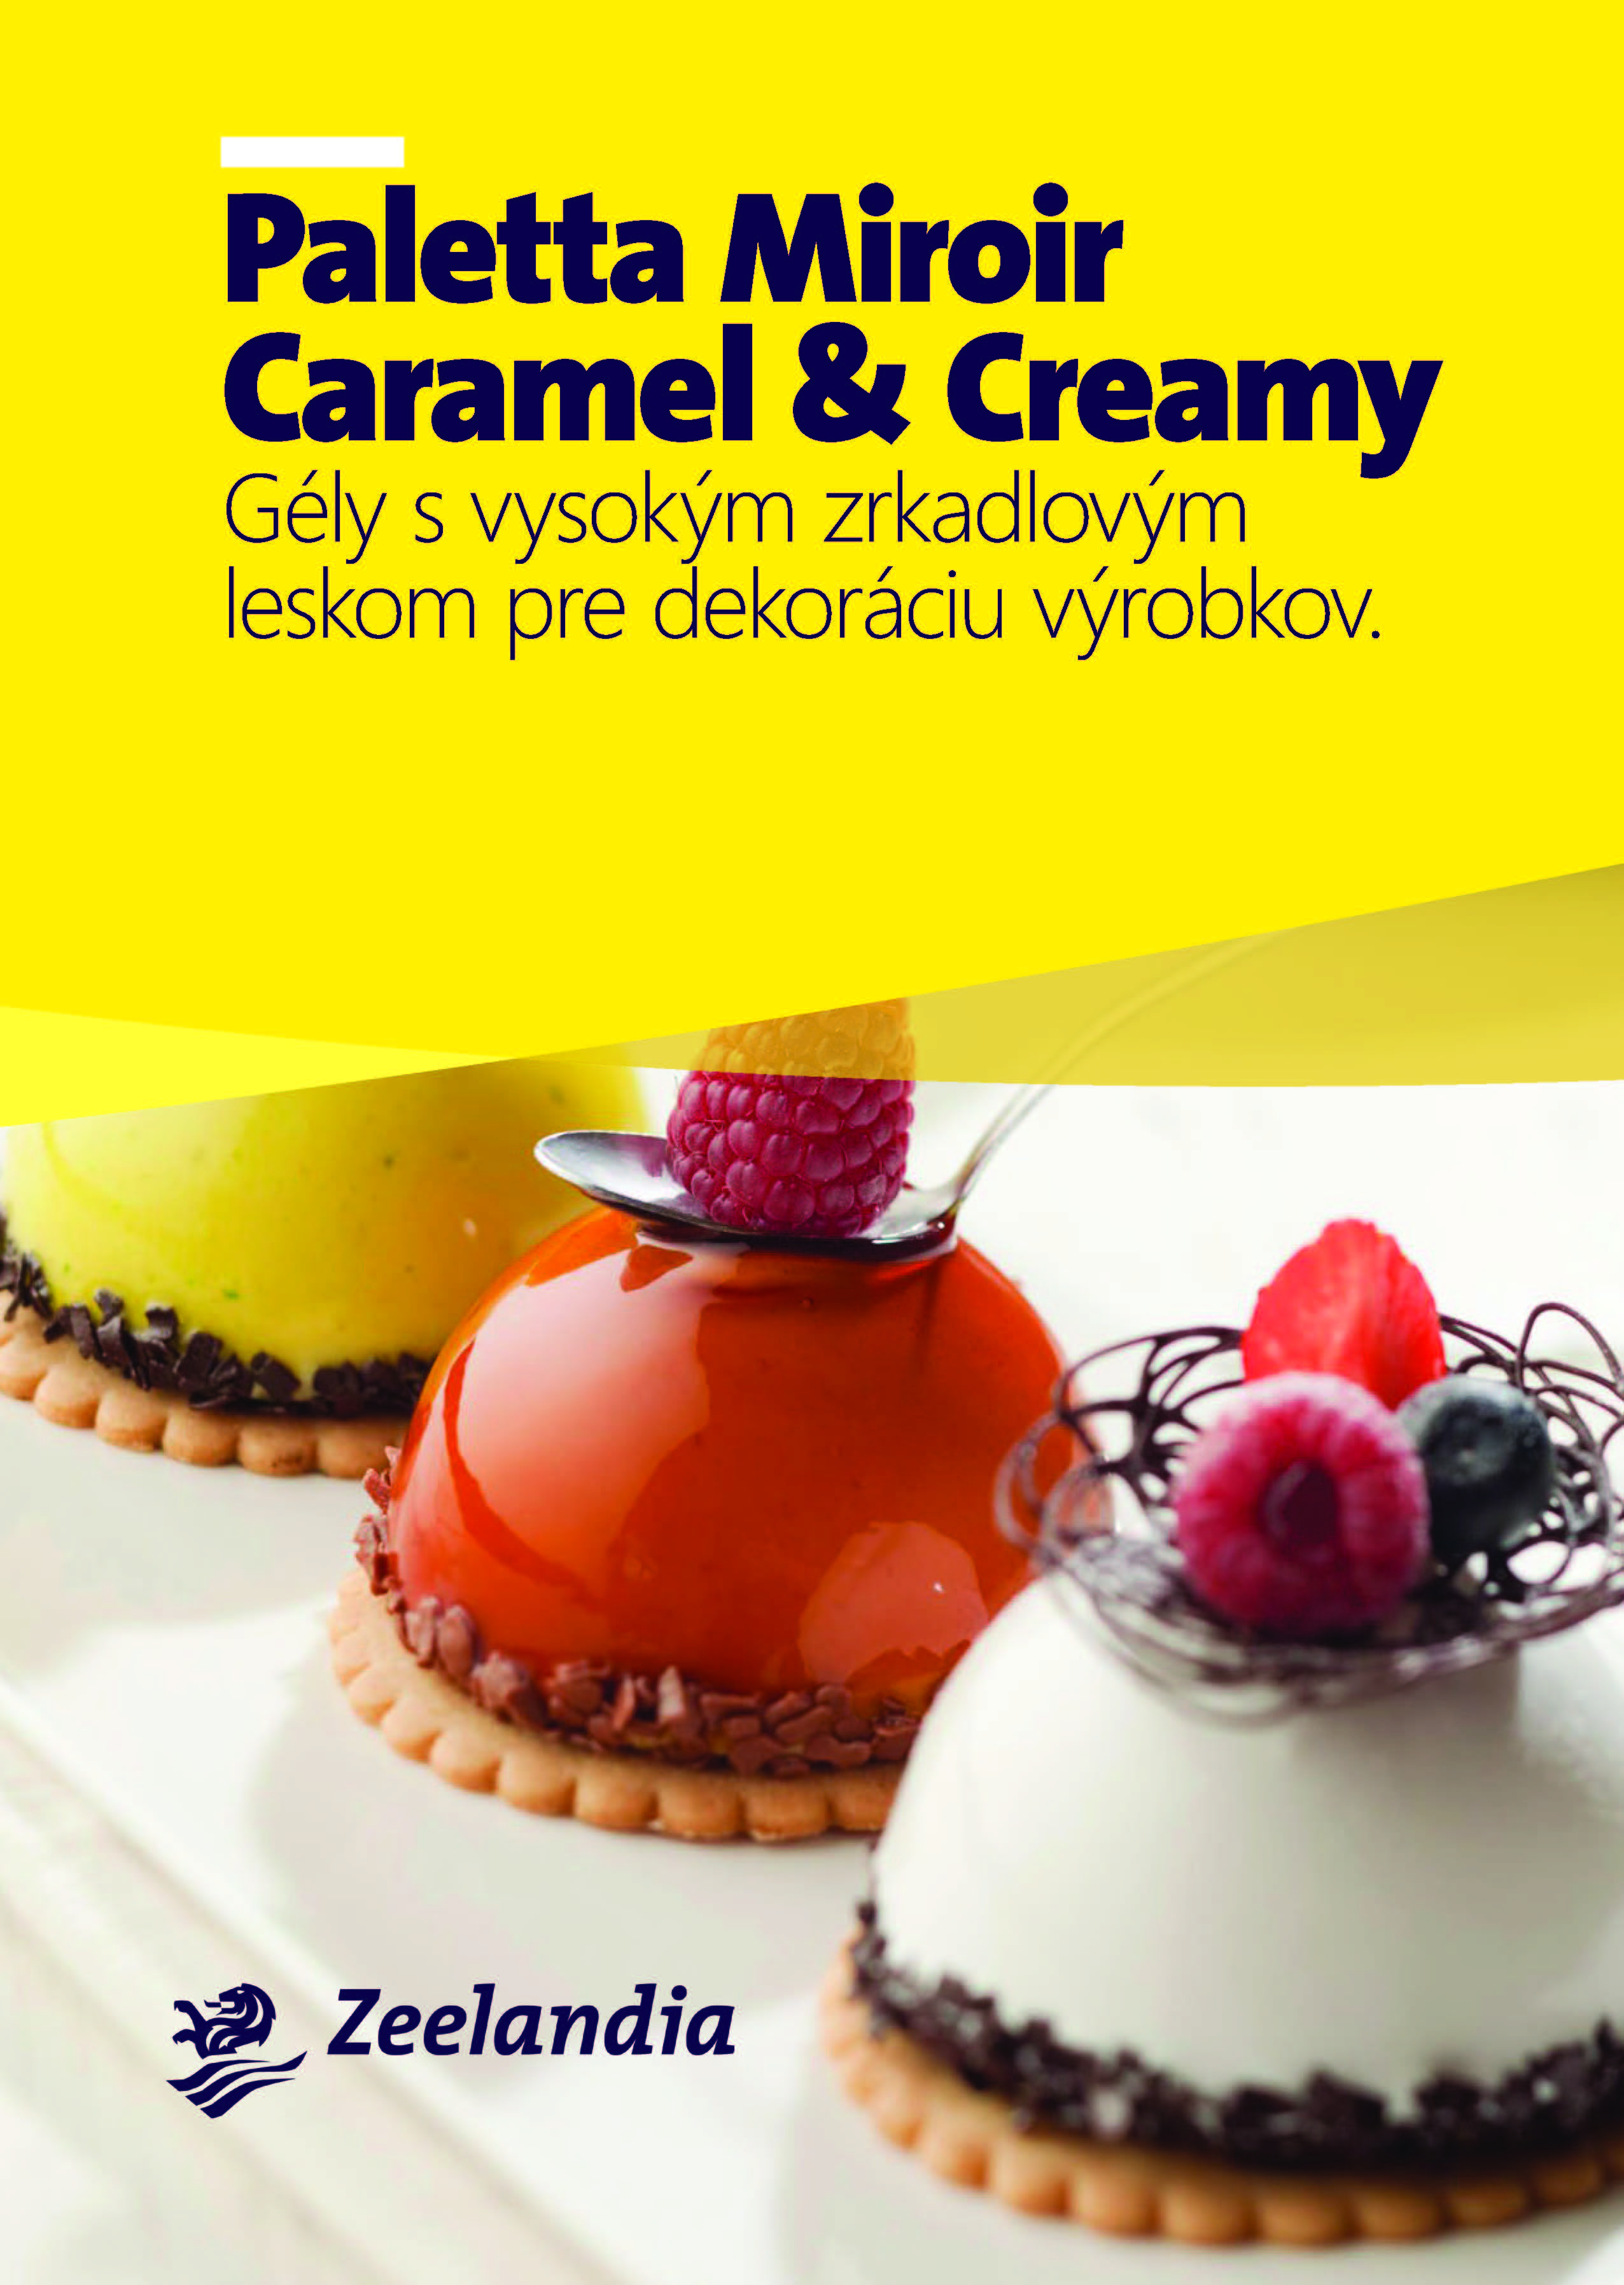 Paletta Miroir Caramel/Creamy